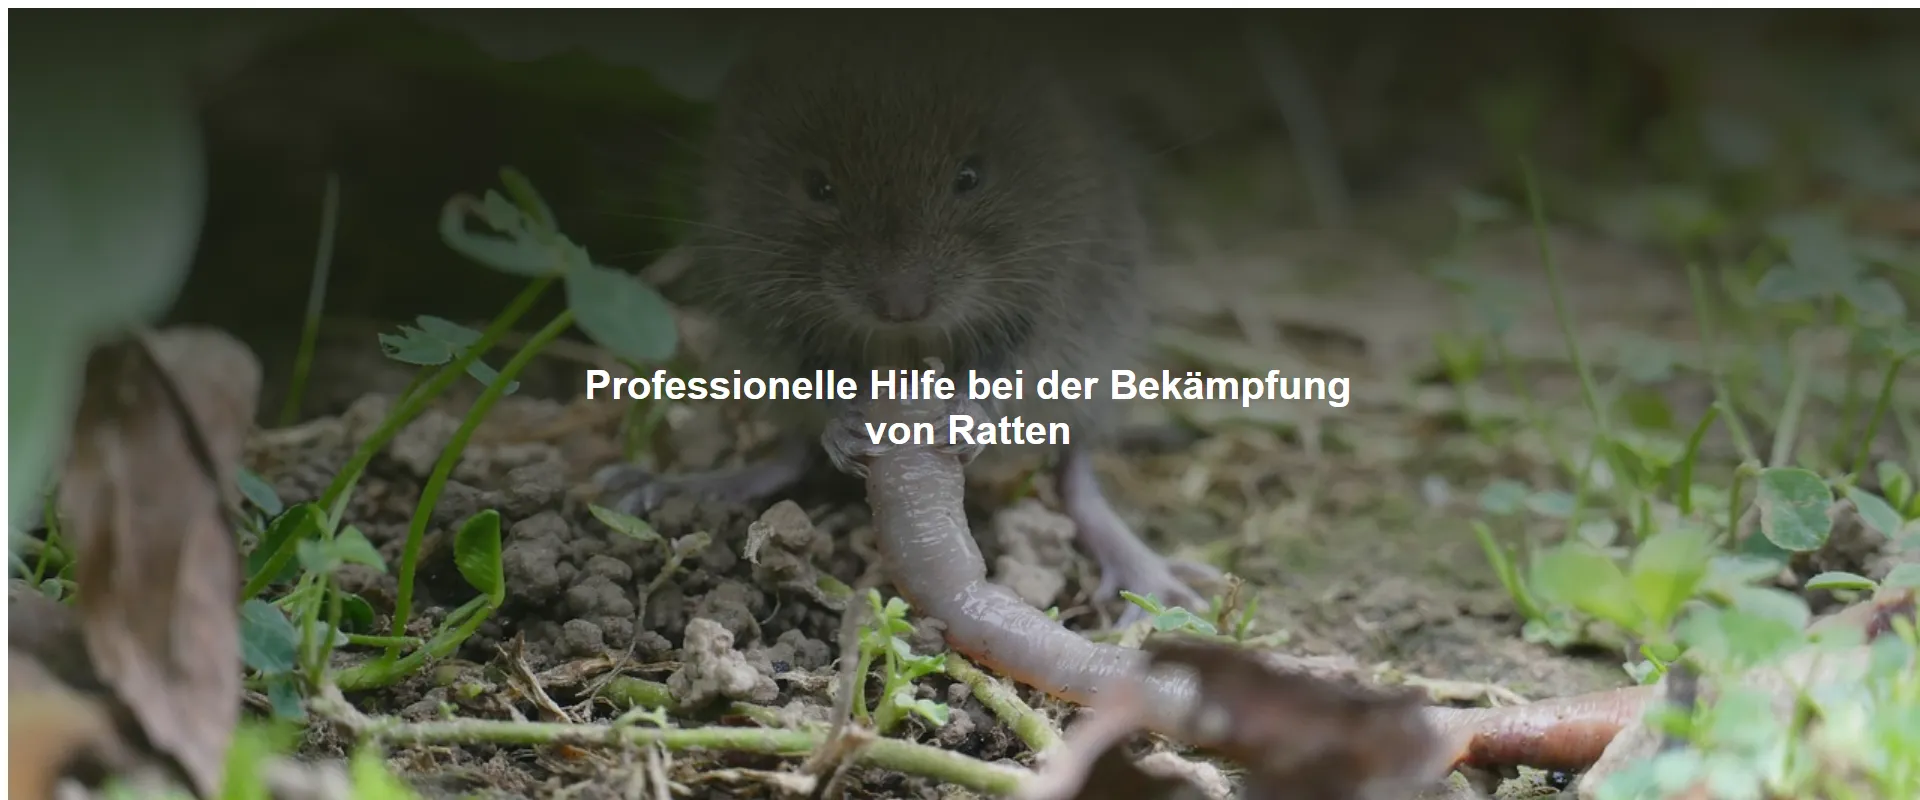 Professionelle Hilfe bei der Bekämpfung von Ratten